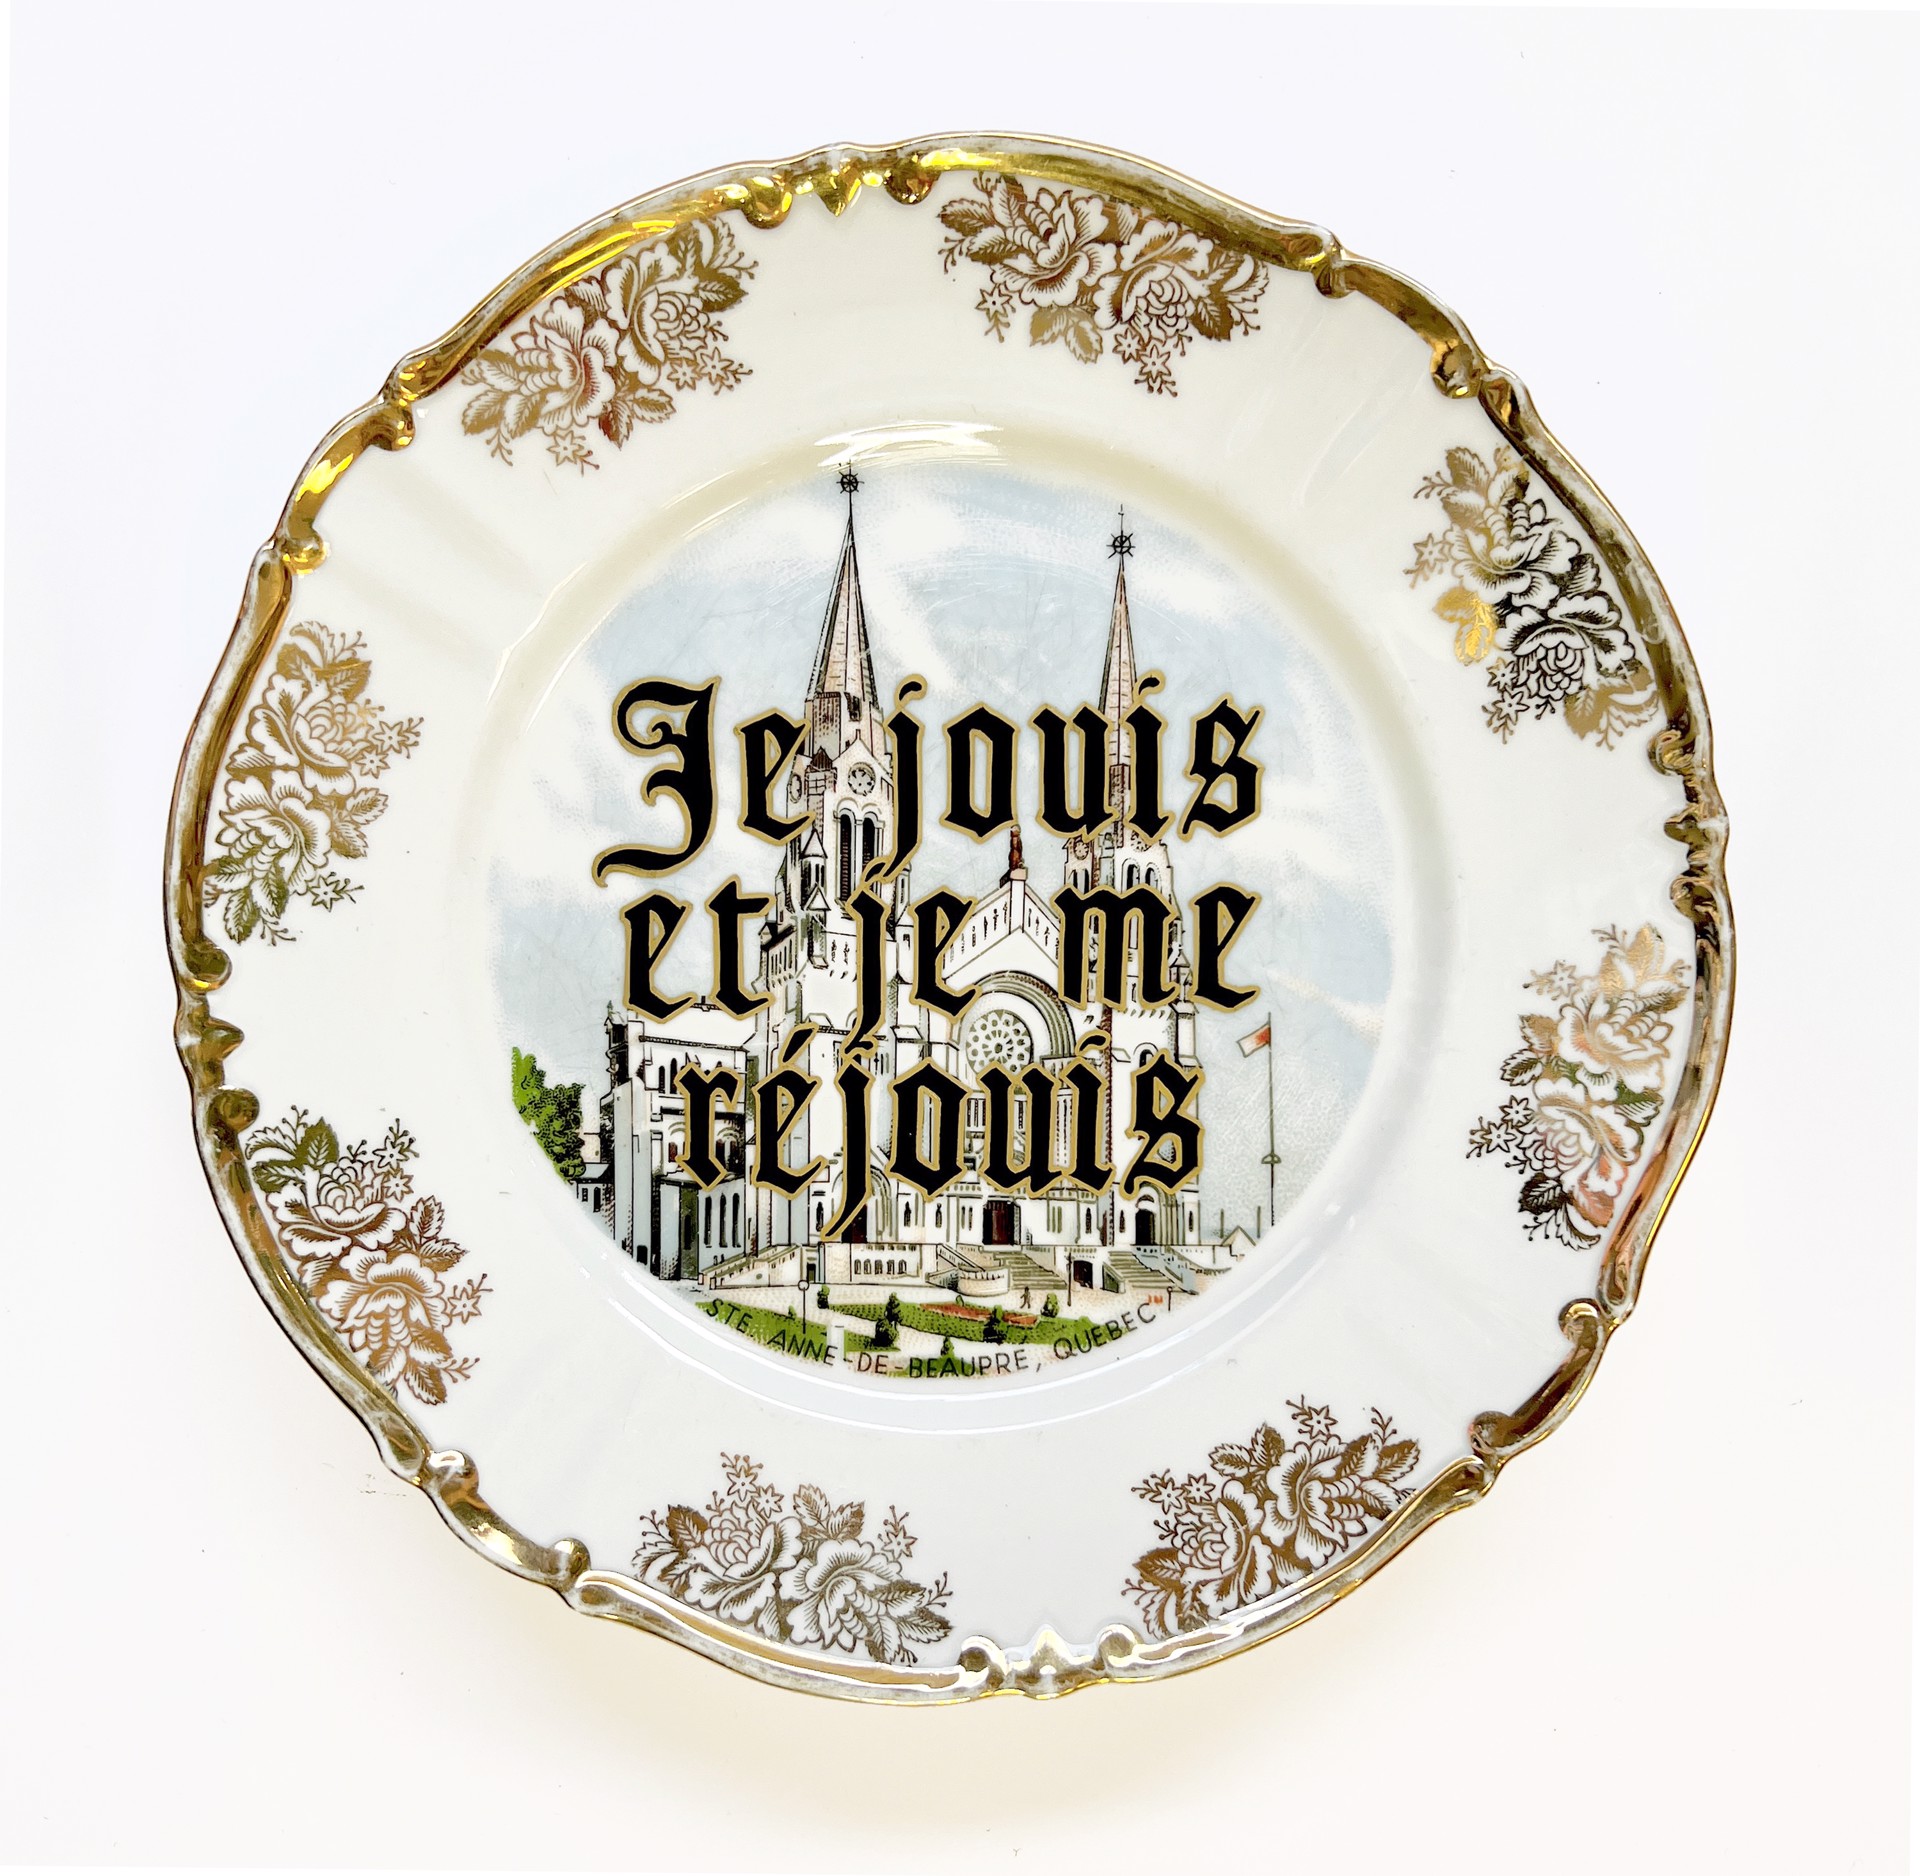 Je jouis et je me réjouis (dinner plate) by Marie-Claude Marquis